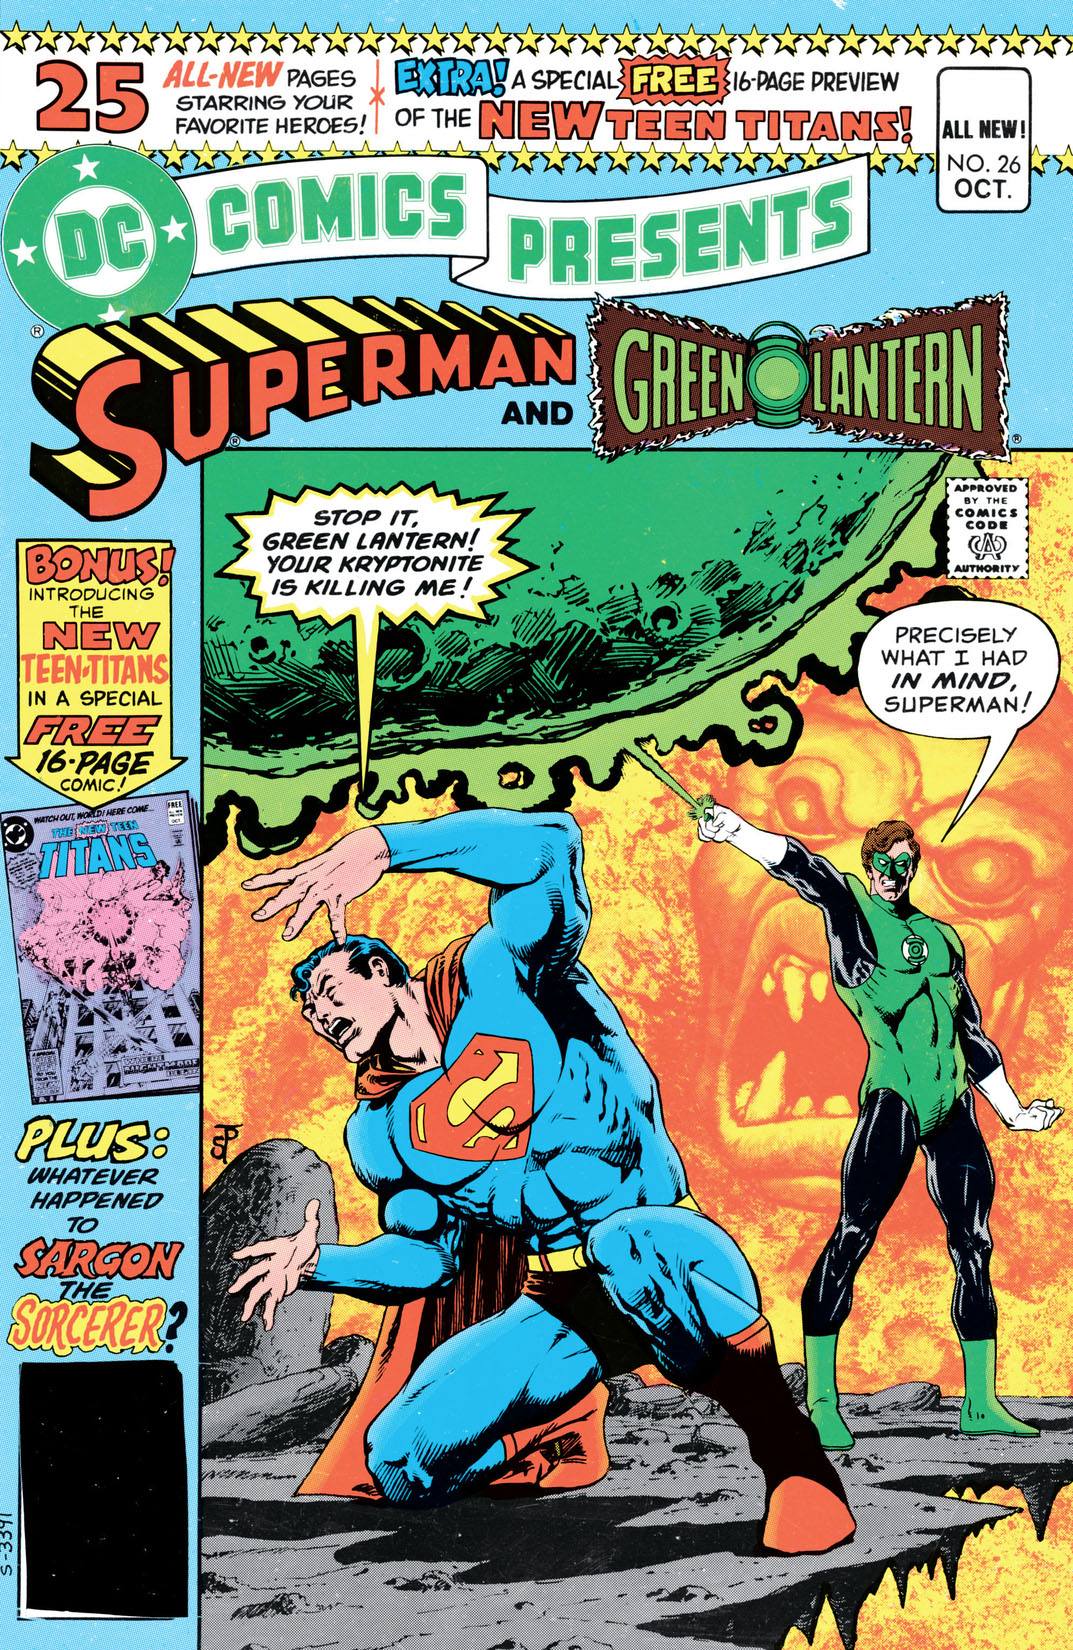 DC Comics Presents (1978-) #26 preview images